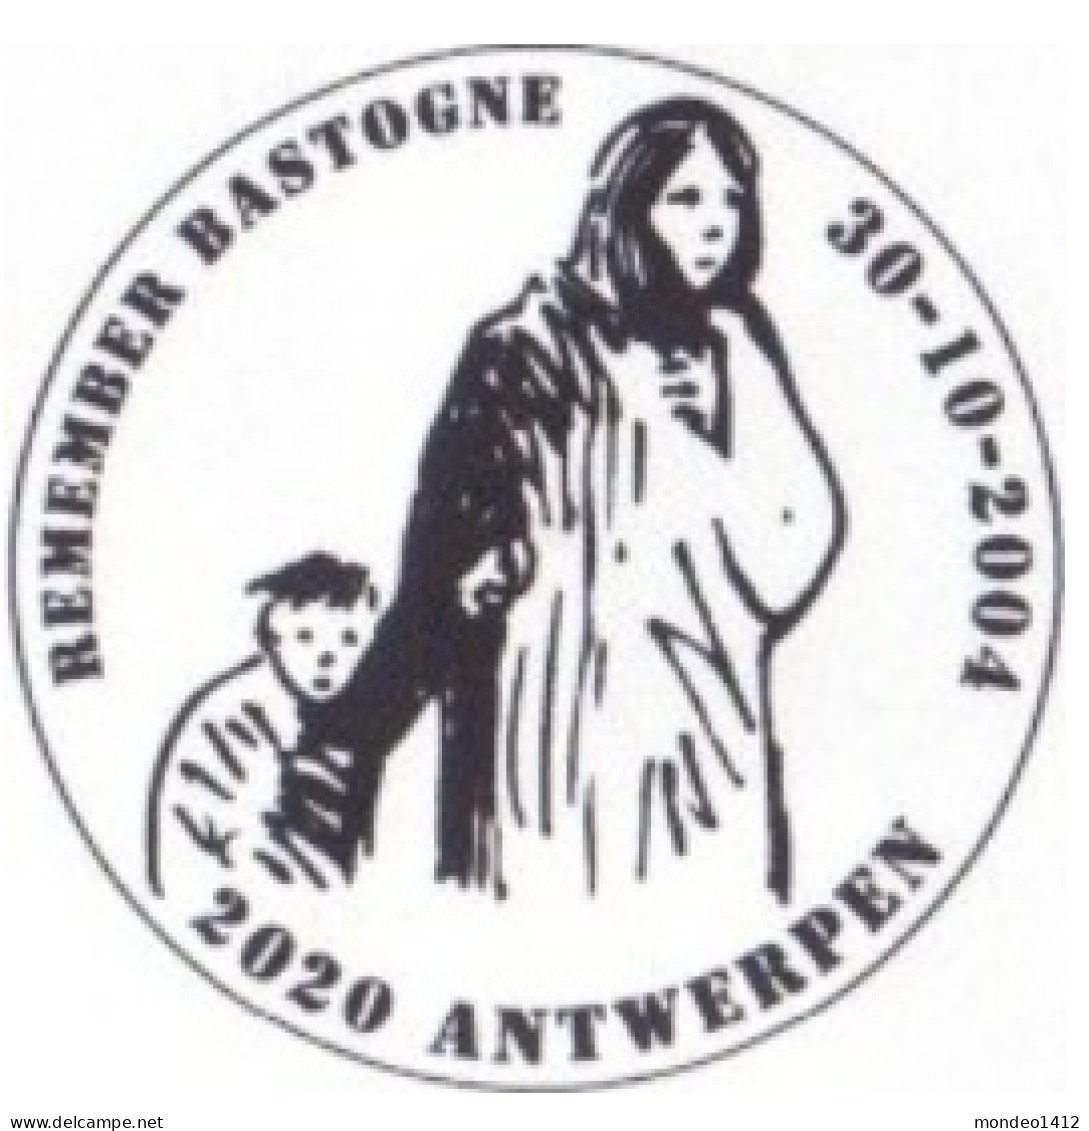 België OBP 3329/3331 - Bastogne Slag Om De Ardennen, Bataille Des Ardennes - Remember Bastogne - Used Stamps